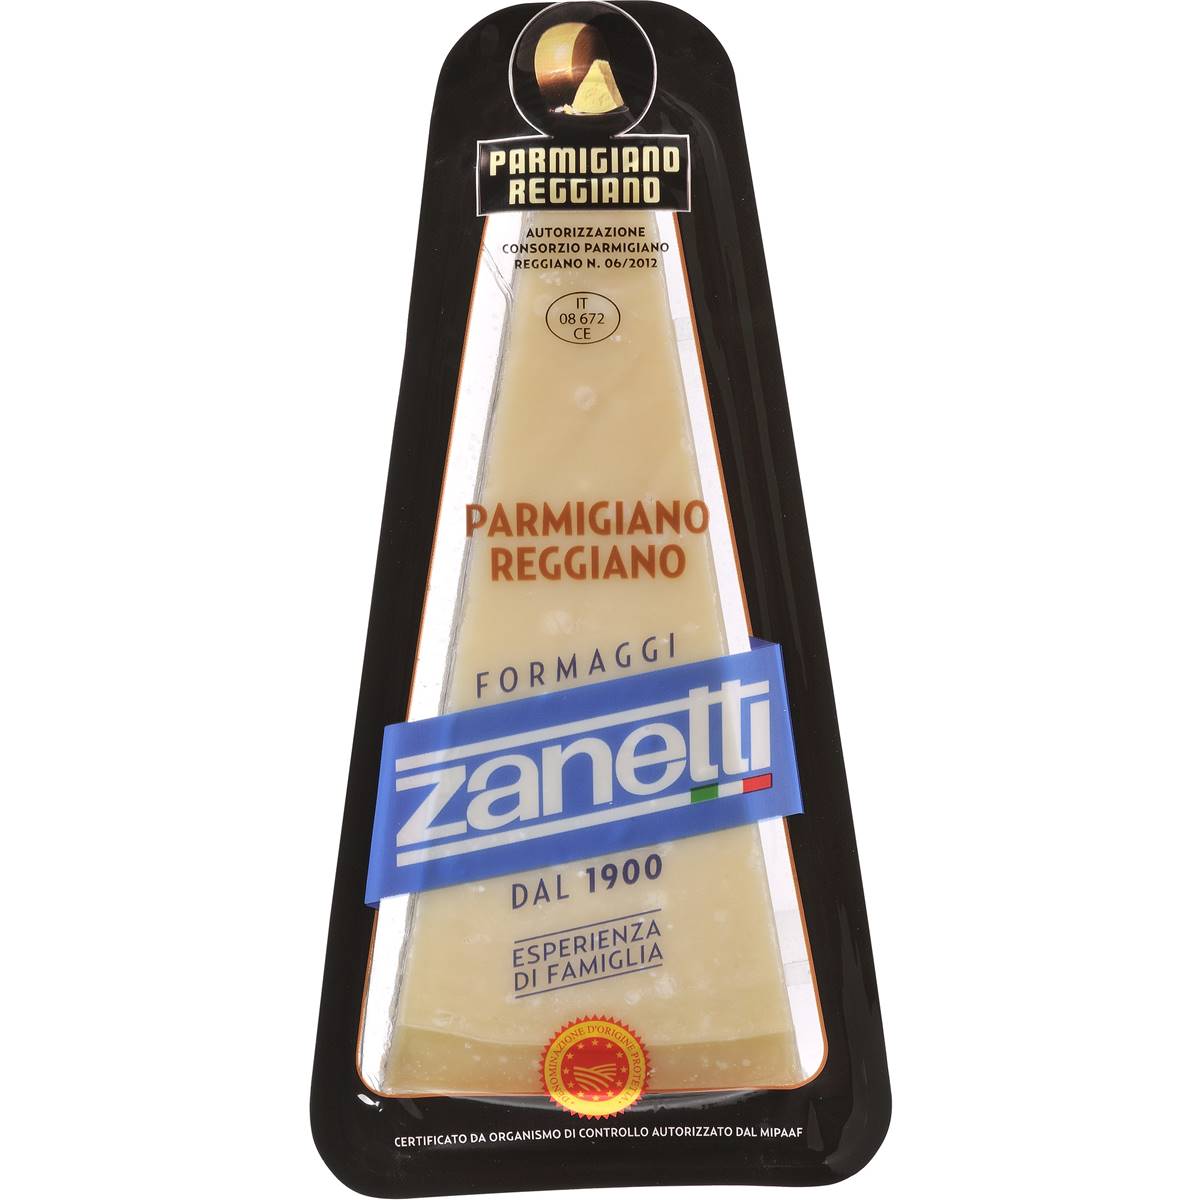 Calories in Zanetti Firm Parmigiano Reggiano